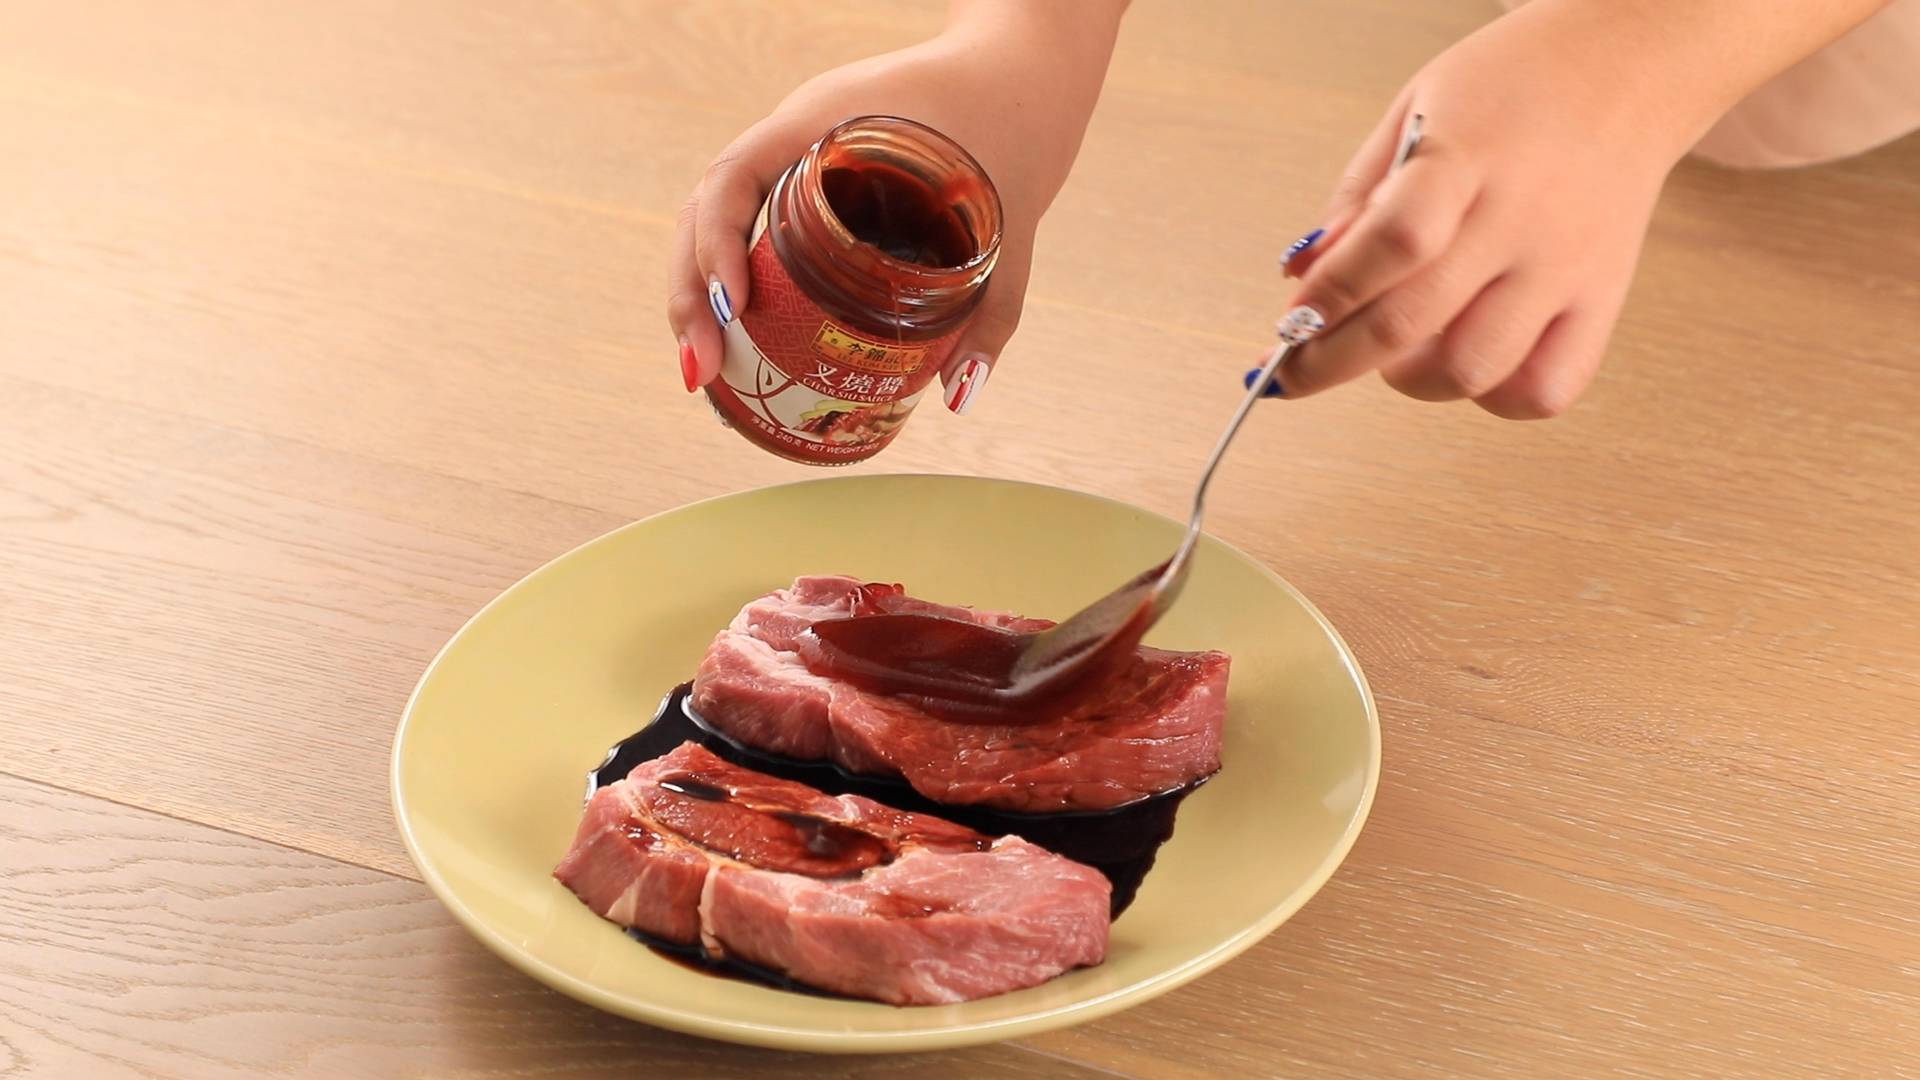 氣炸鍋叉燒 把叉燒醬及豉油均勻塗於豬肉上。